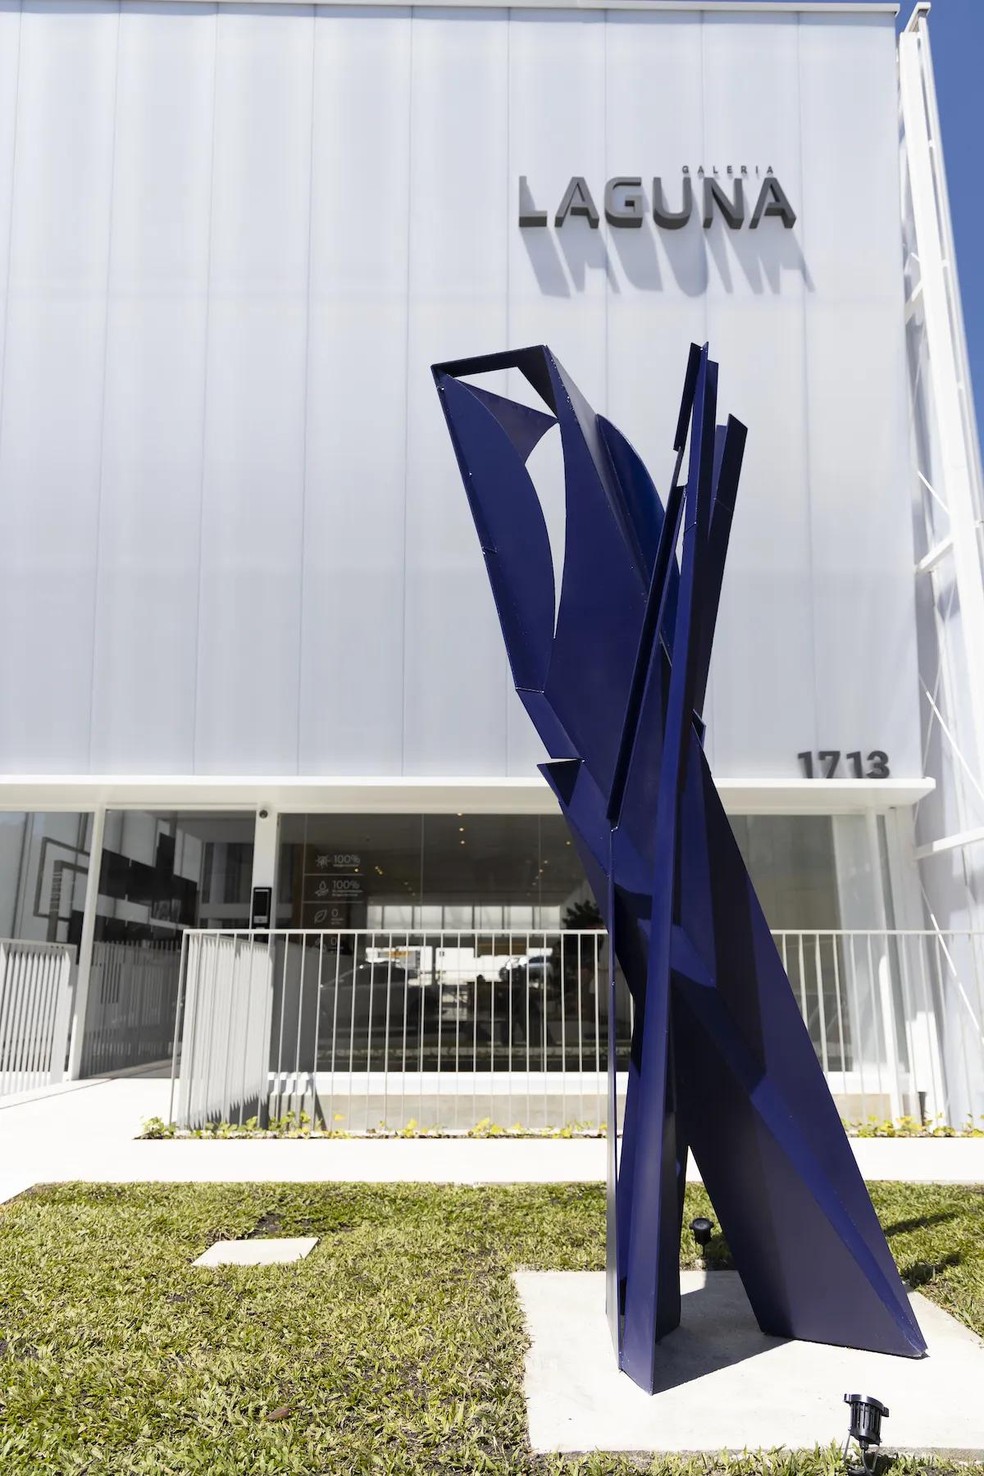 Em frente ao edifício, na calçada, há uma obra do renomado escultor Emanoel Araújo, com mais de 3 m de altura (Foto: Eduardo Bragança / Divulgação) — Foto: Casa e Jardim